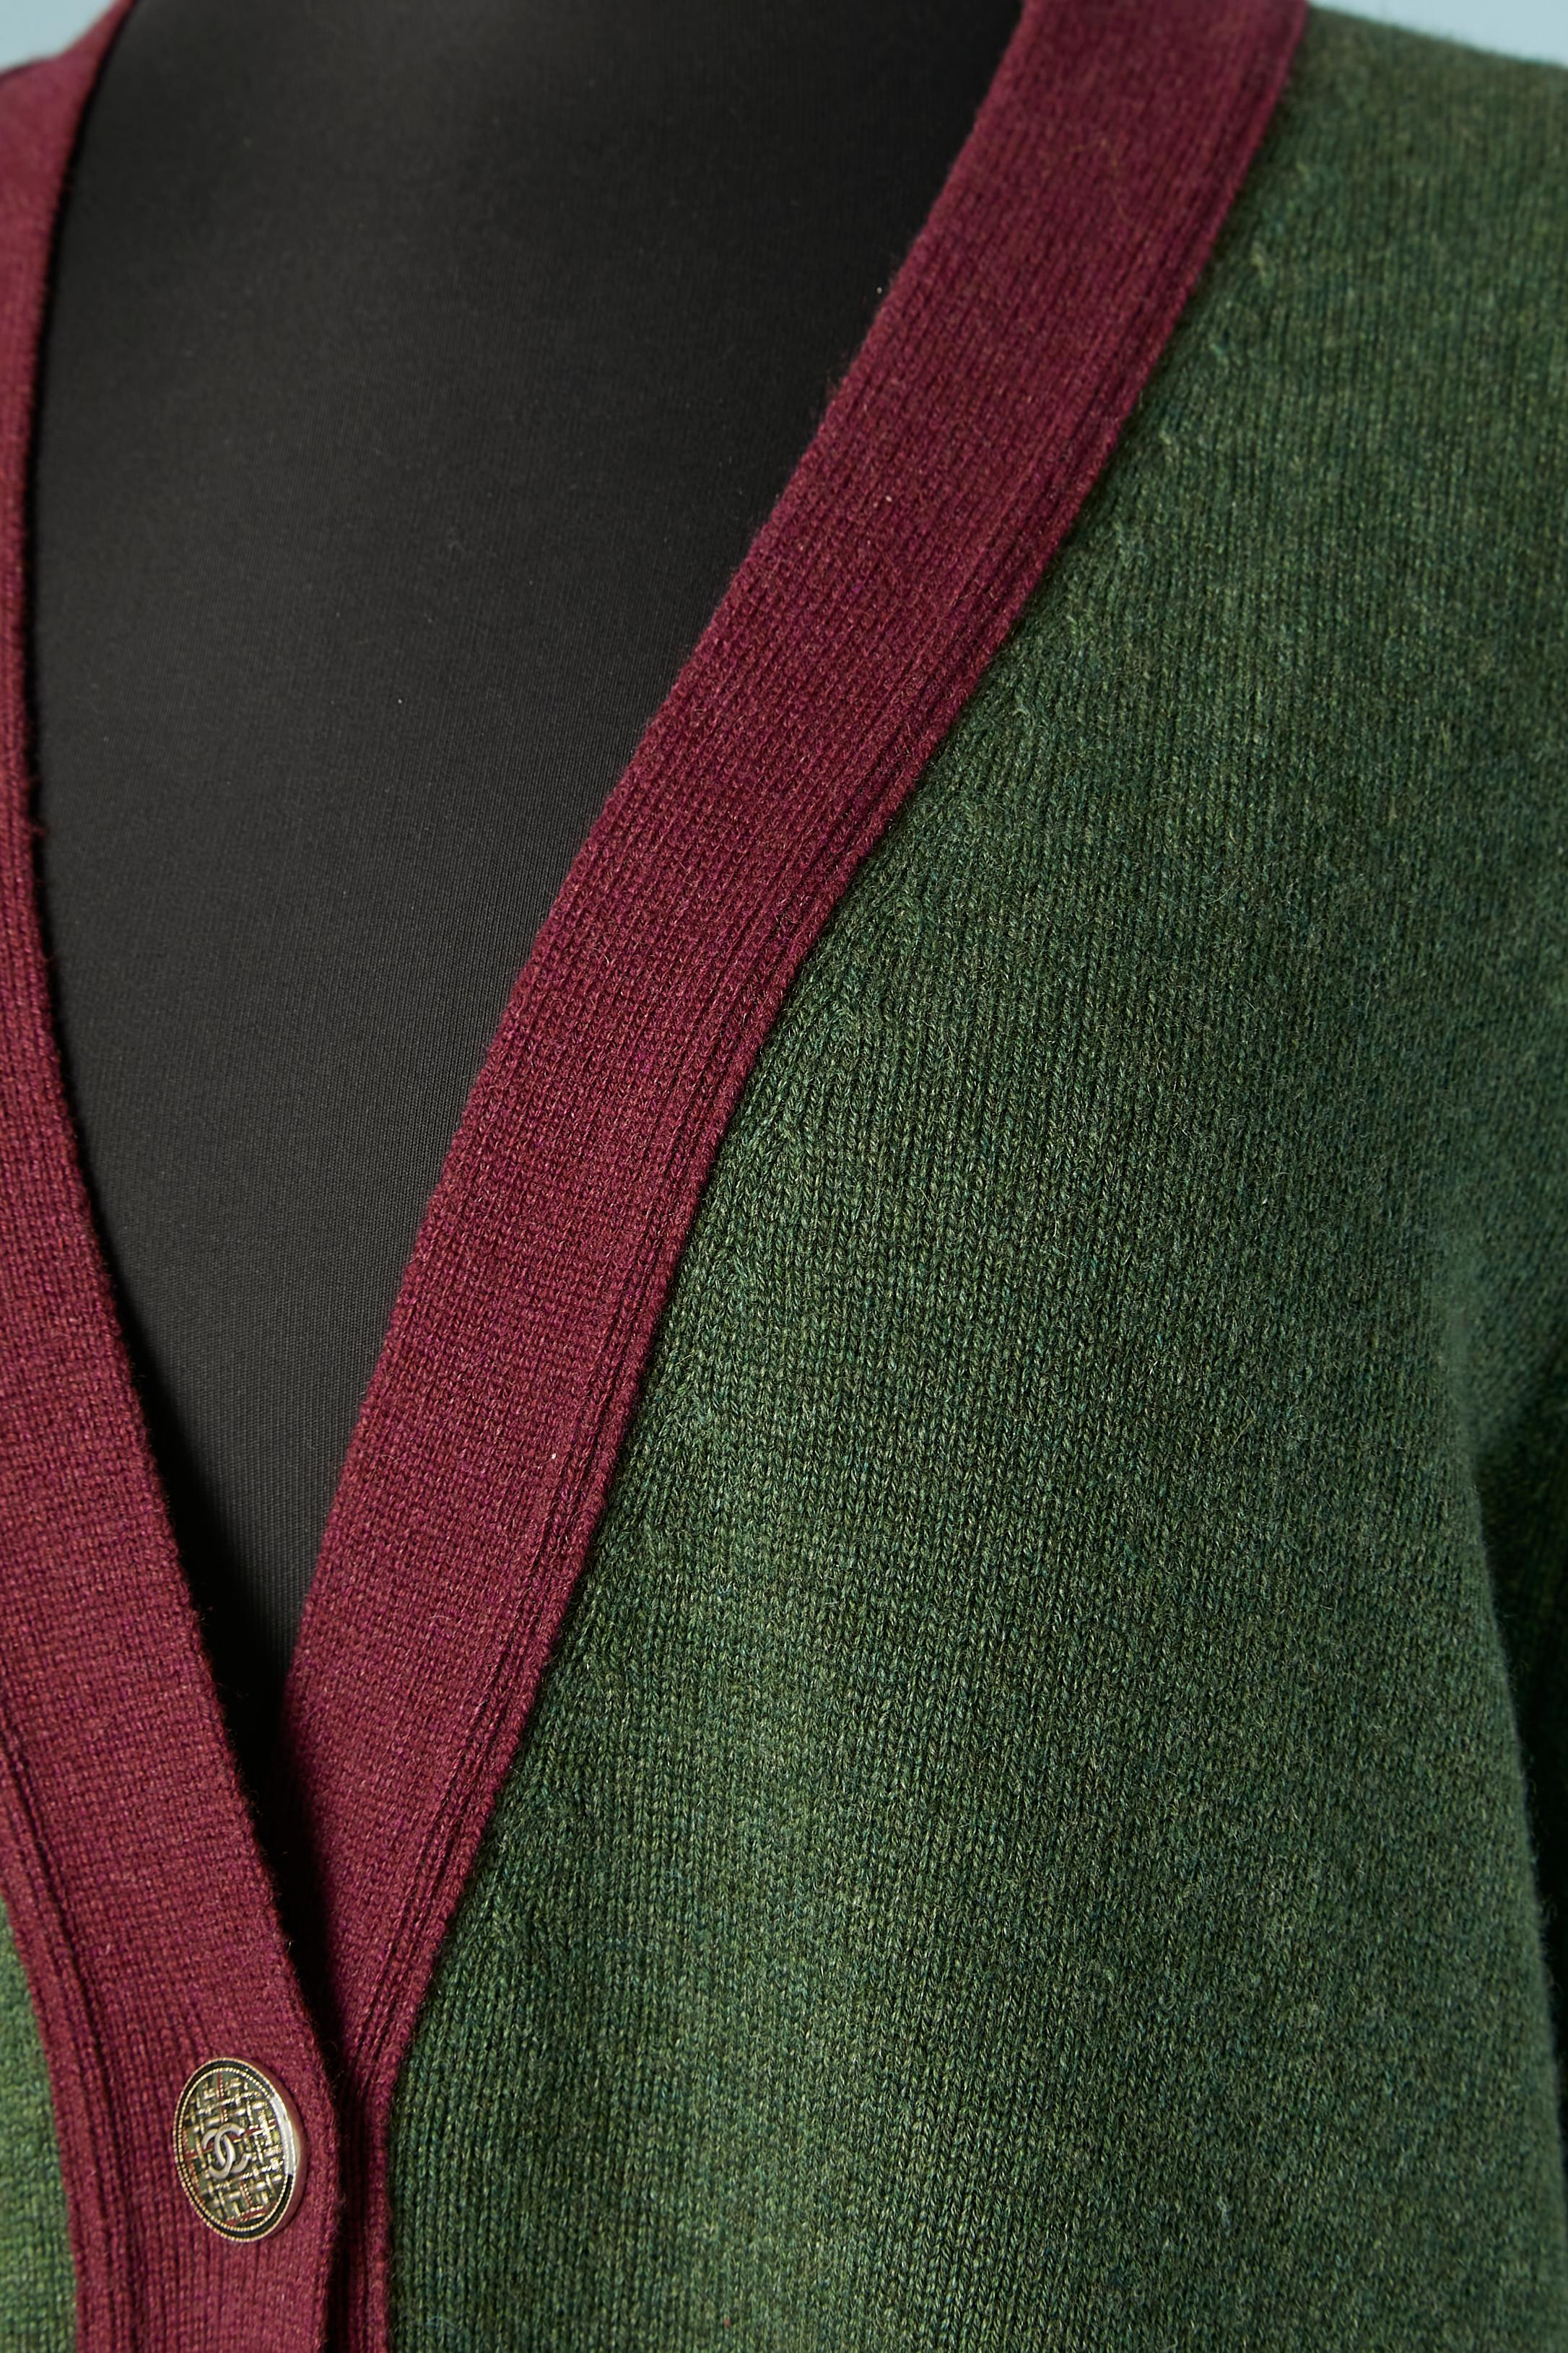 Kakifarbene Strickjacke aus Kaschmir mit lilafarbenem Rand und Markenknöpfen. Tasche auf beiden Seiten. 
GRÖSSE 48 (fR) XL 